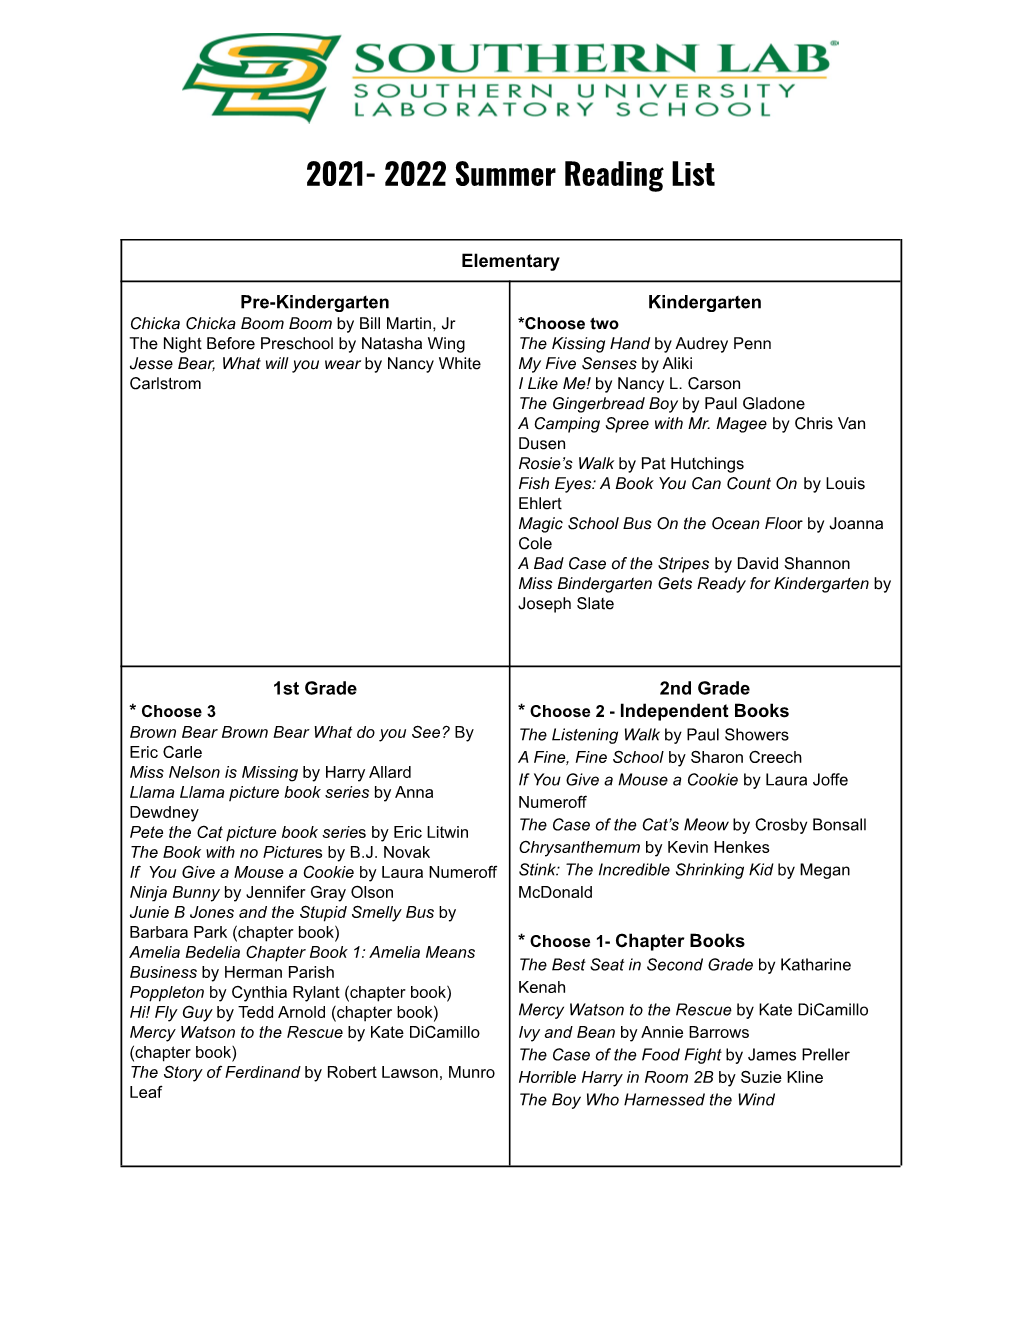 Summer Reading List 2021-22